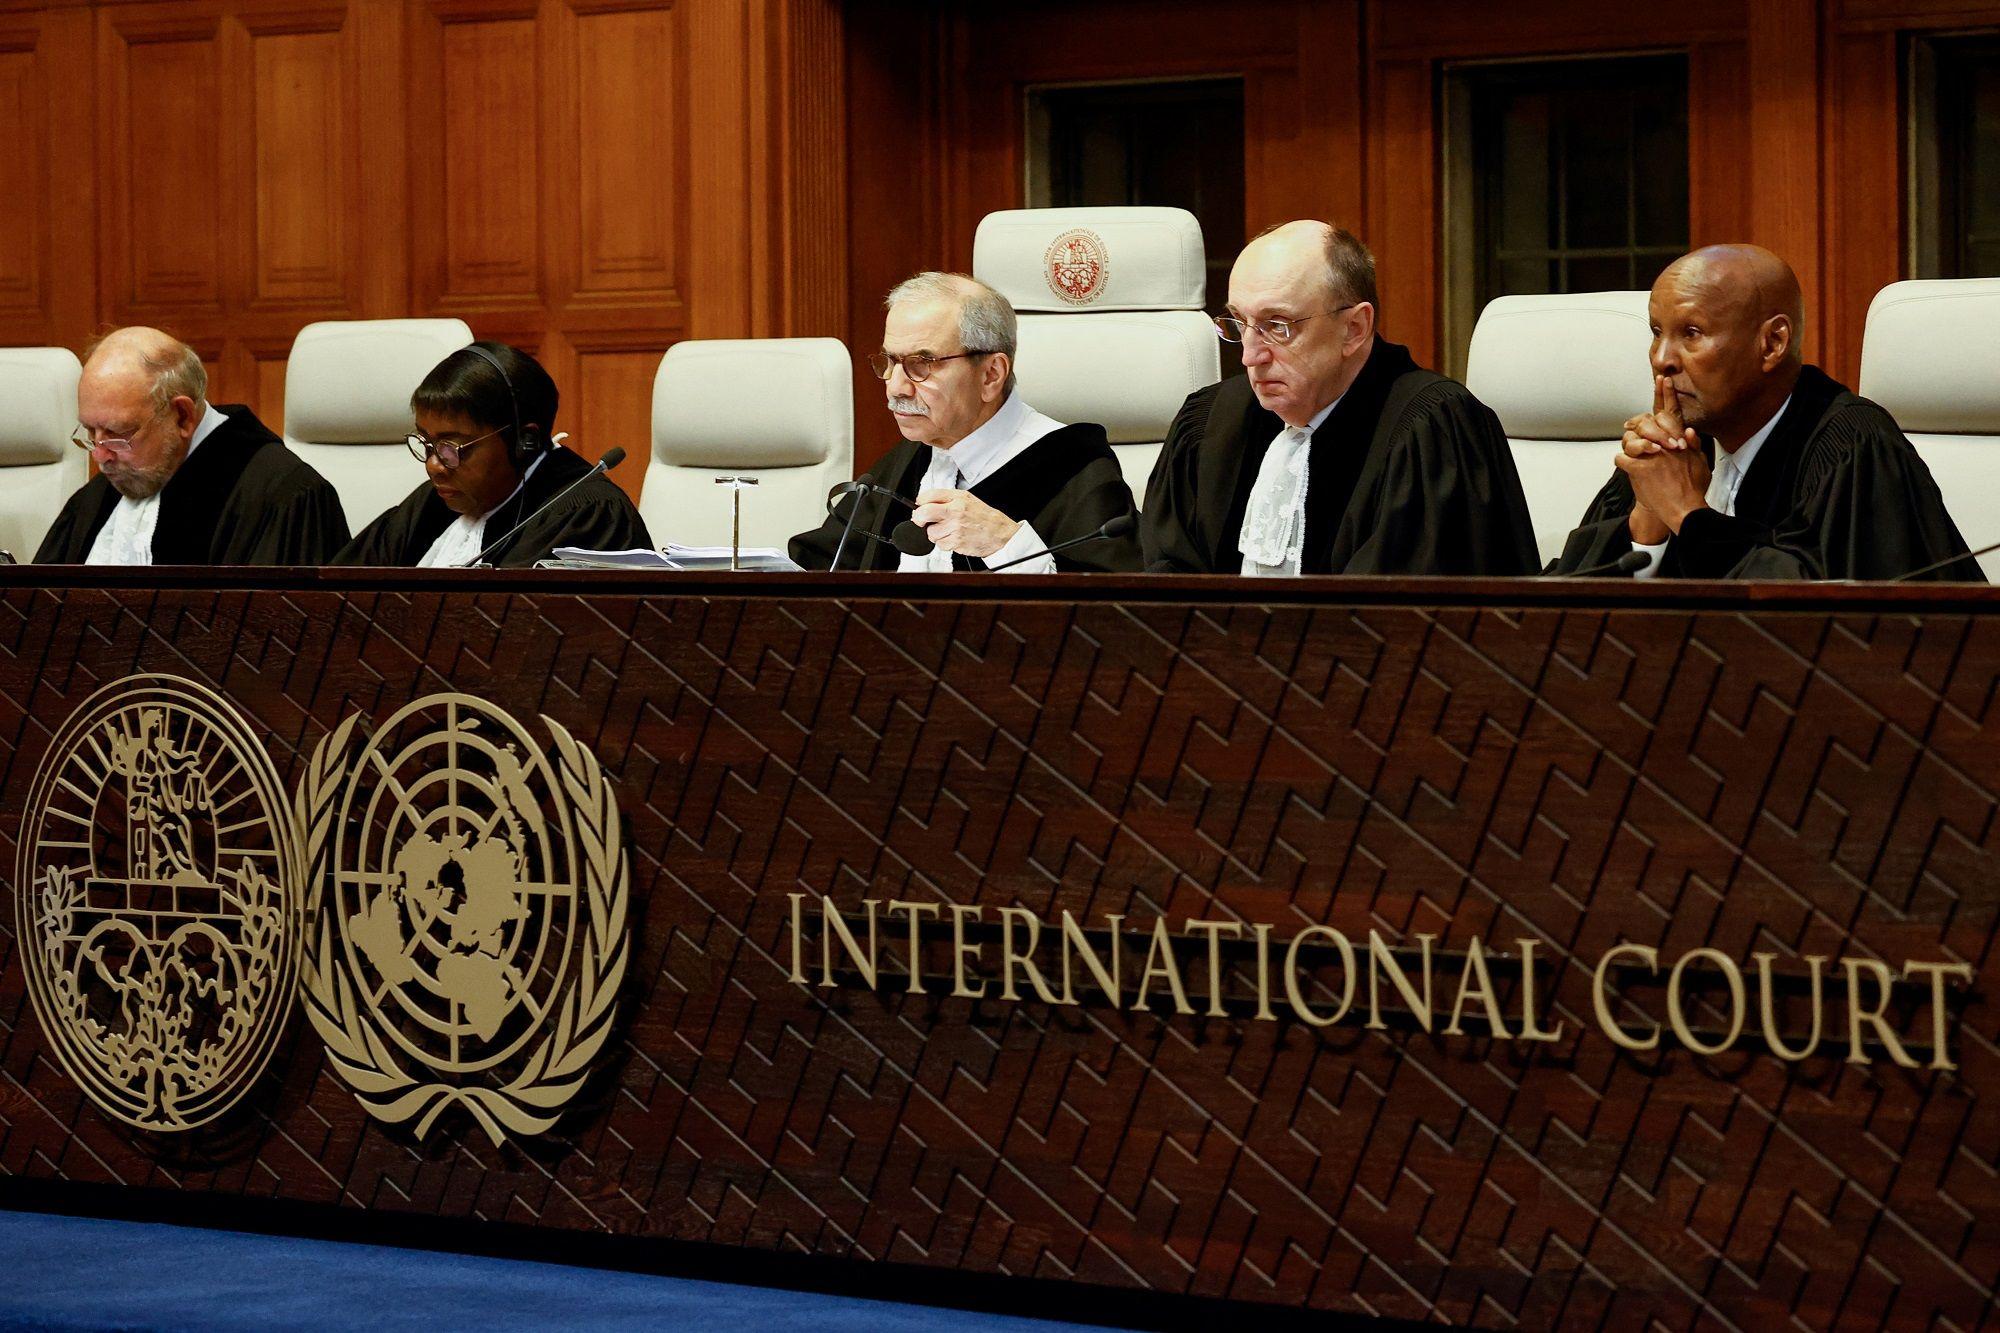 "المحاكم الدولية يجب أن تلتزم باختصاصاتها القضائية فقط" – جيروزاليم بوست 